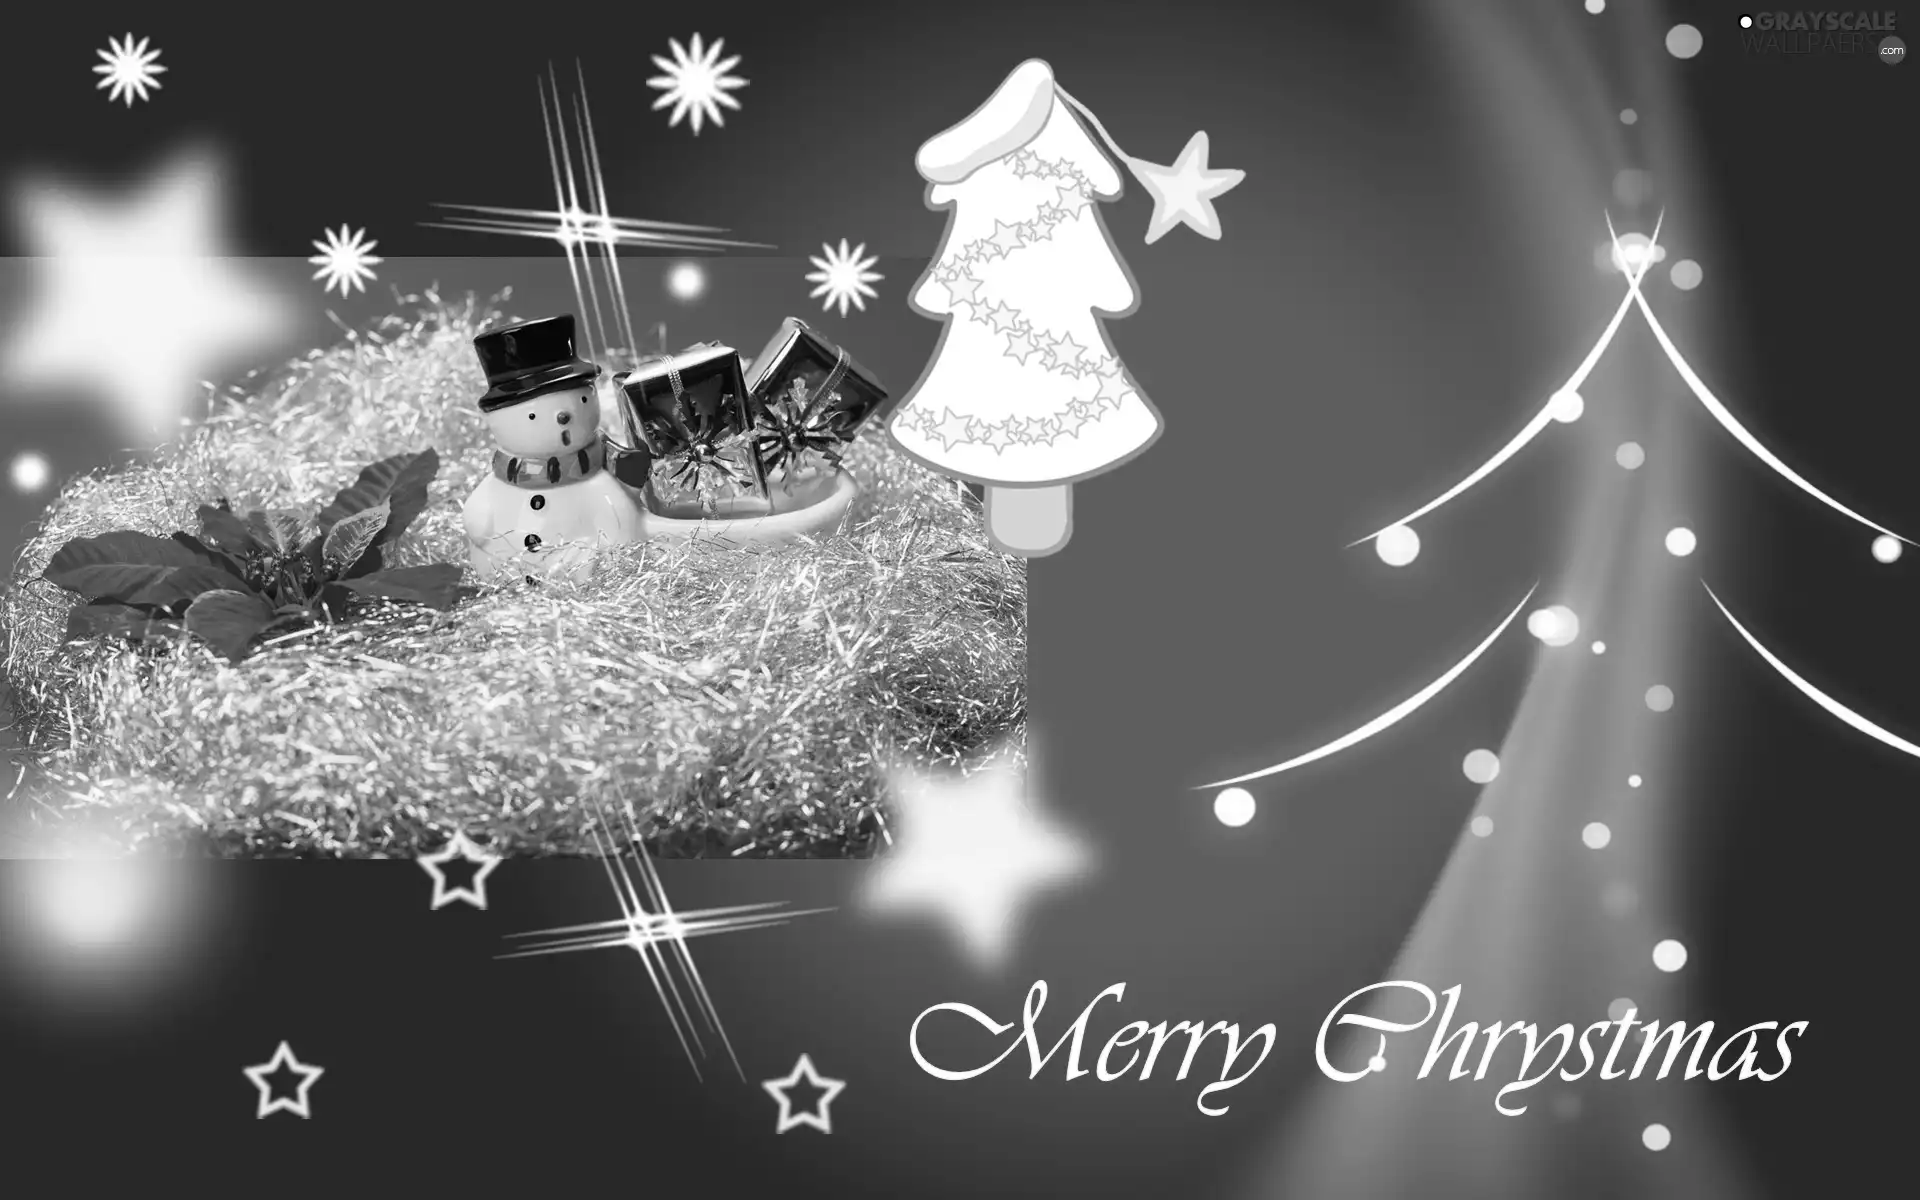 ##, Christmas, Snowman, Stars, christmas tree